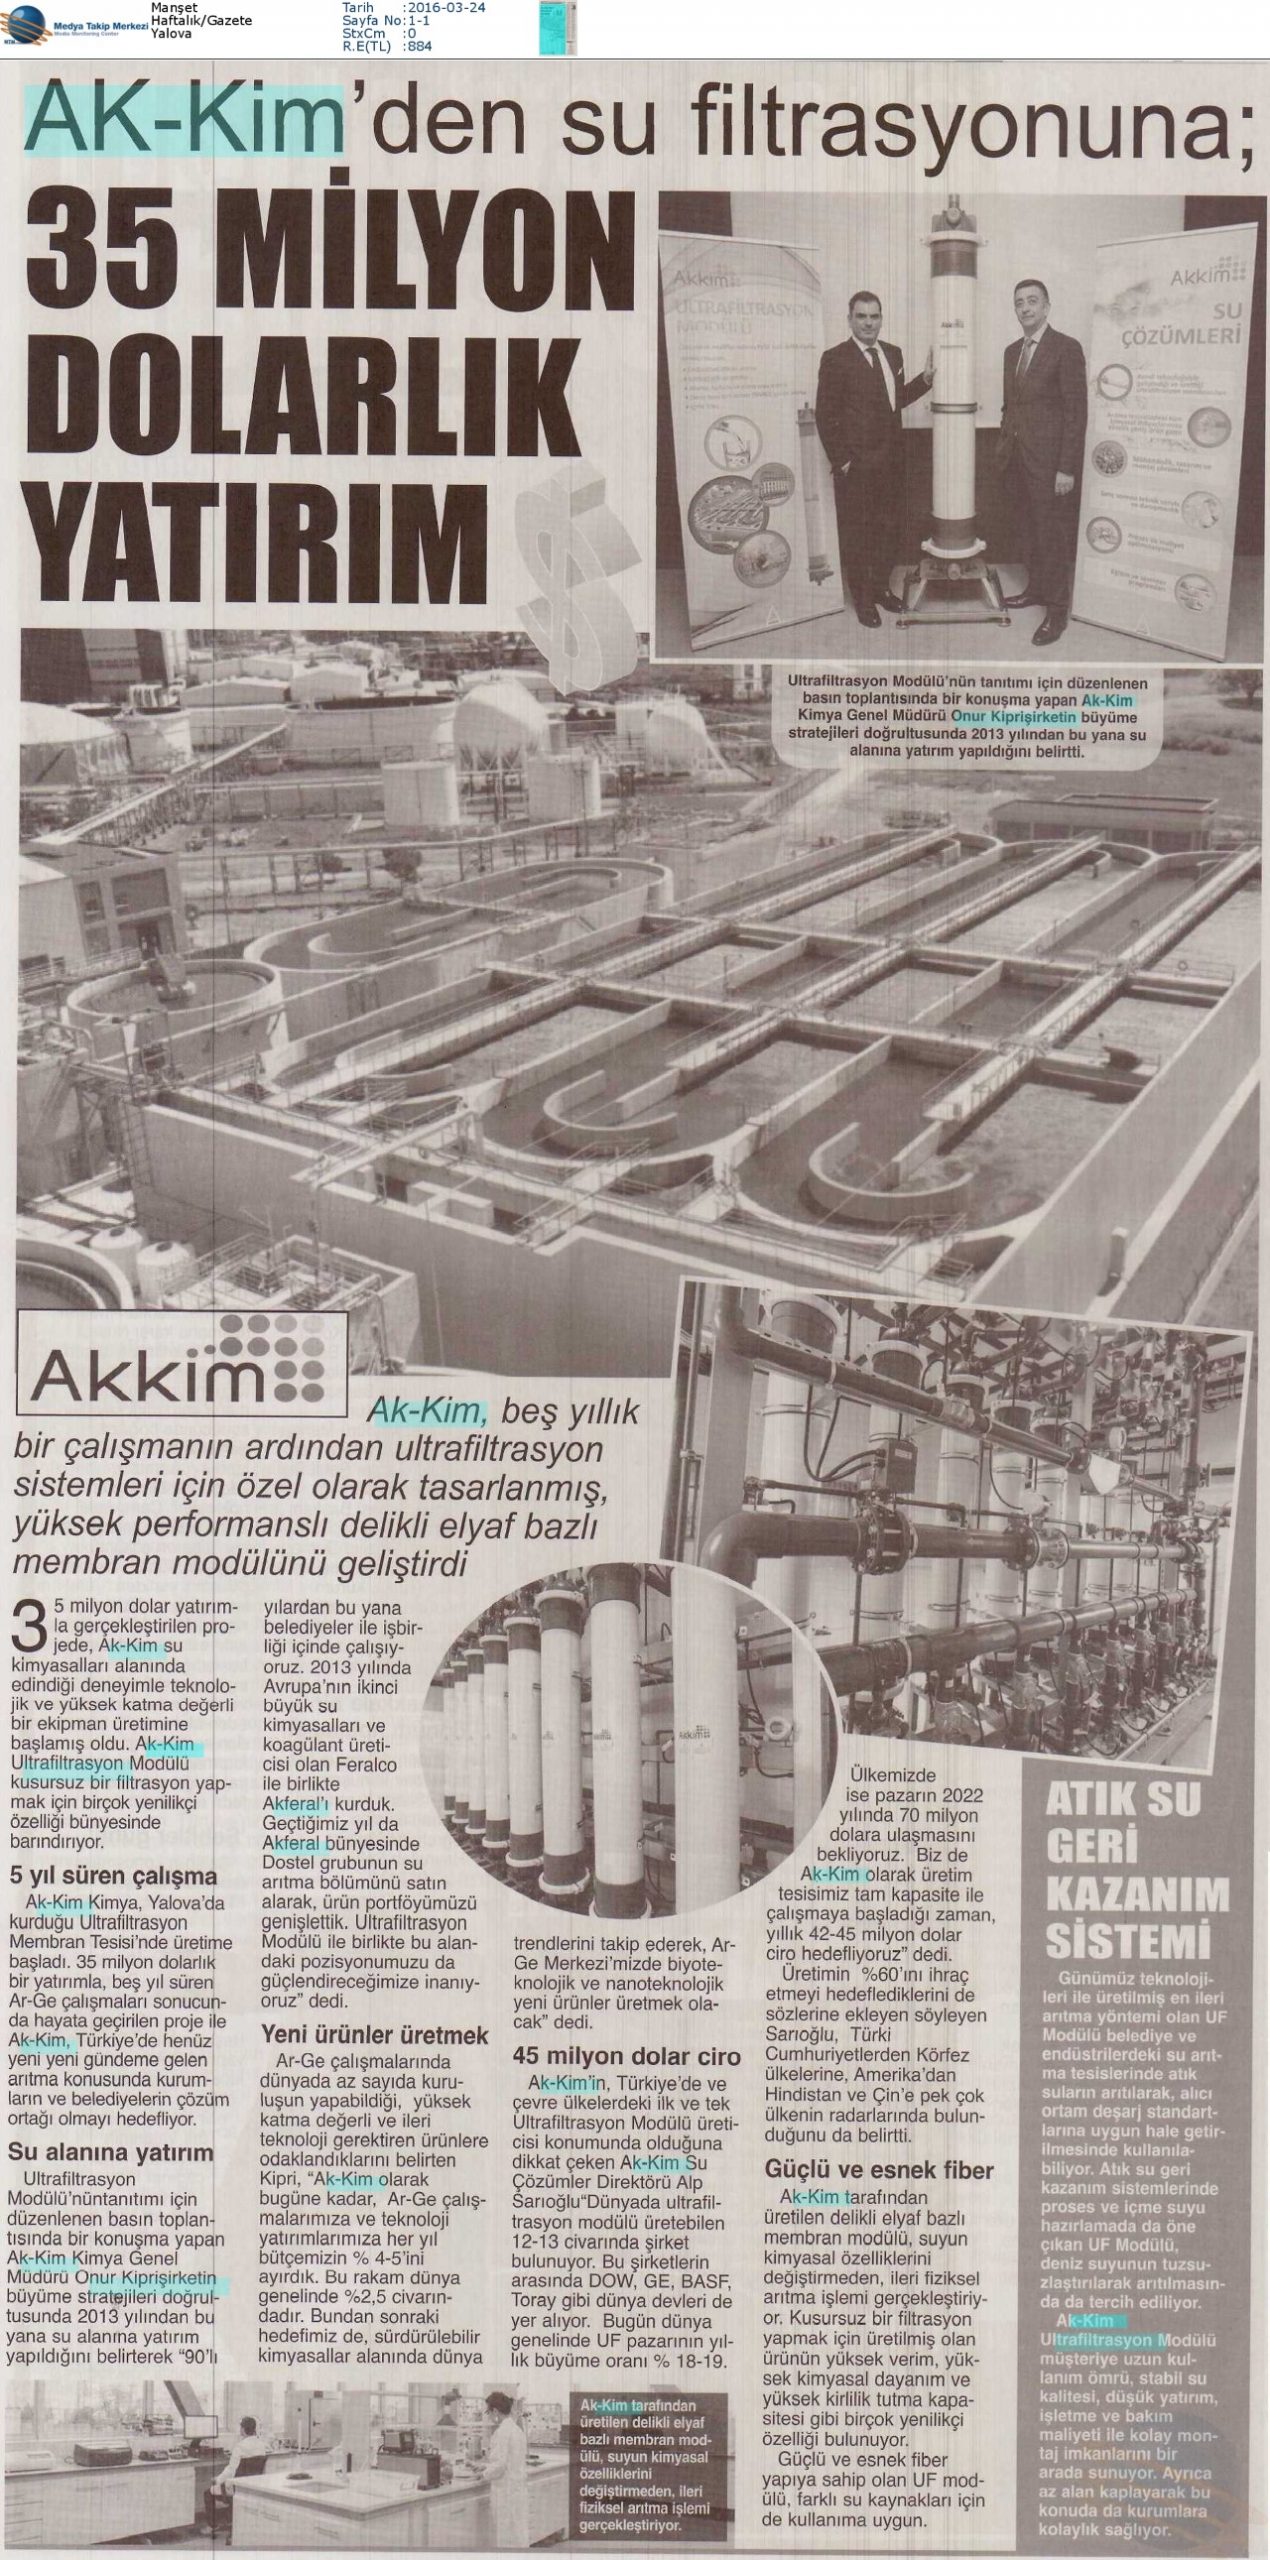 Akkim’den su filtrasyonuna 35 milyon dolarlık yatırım / Manşet – 24 Mart 2016